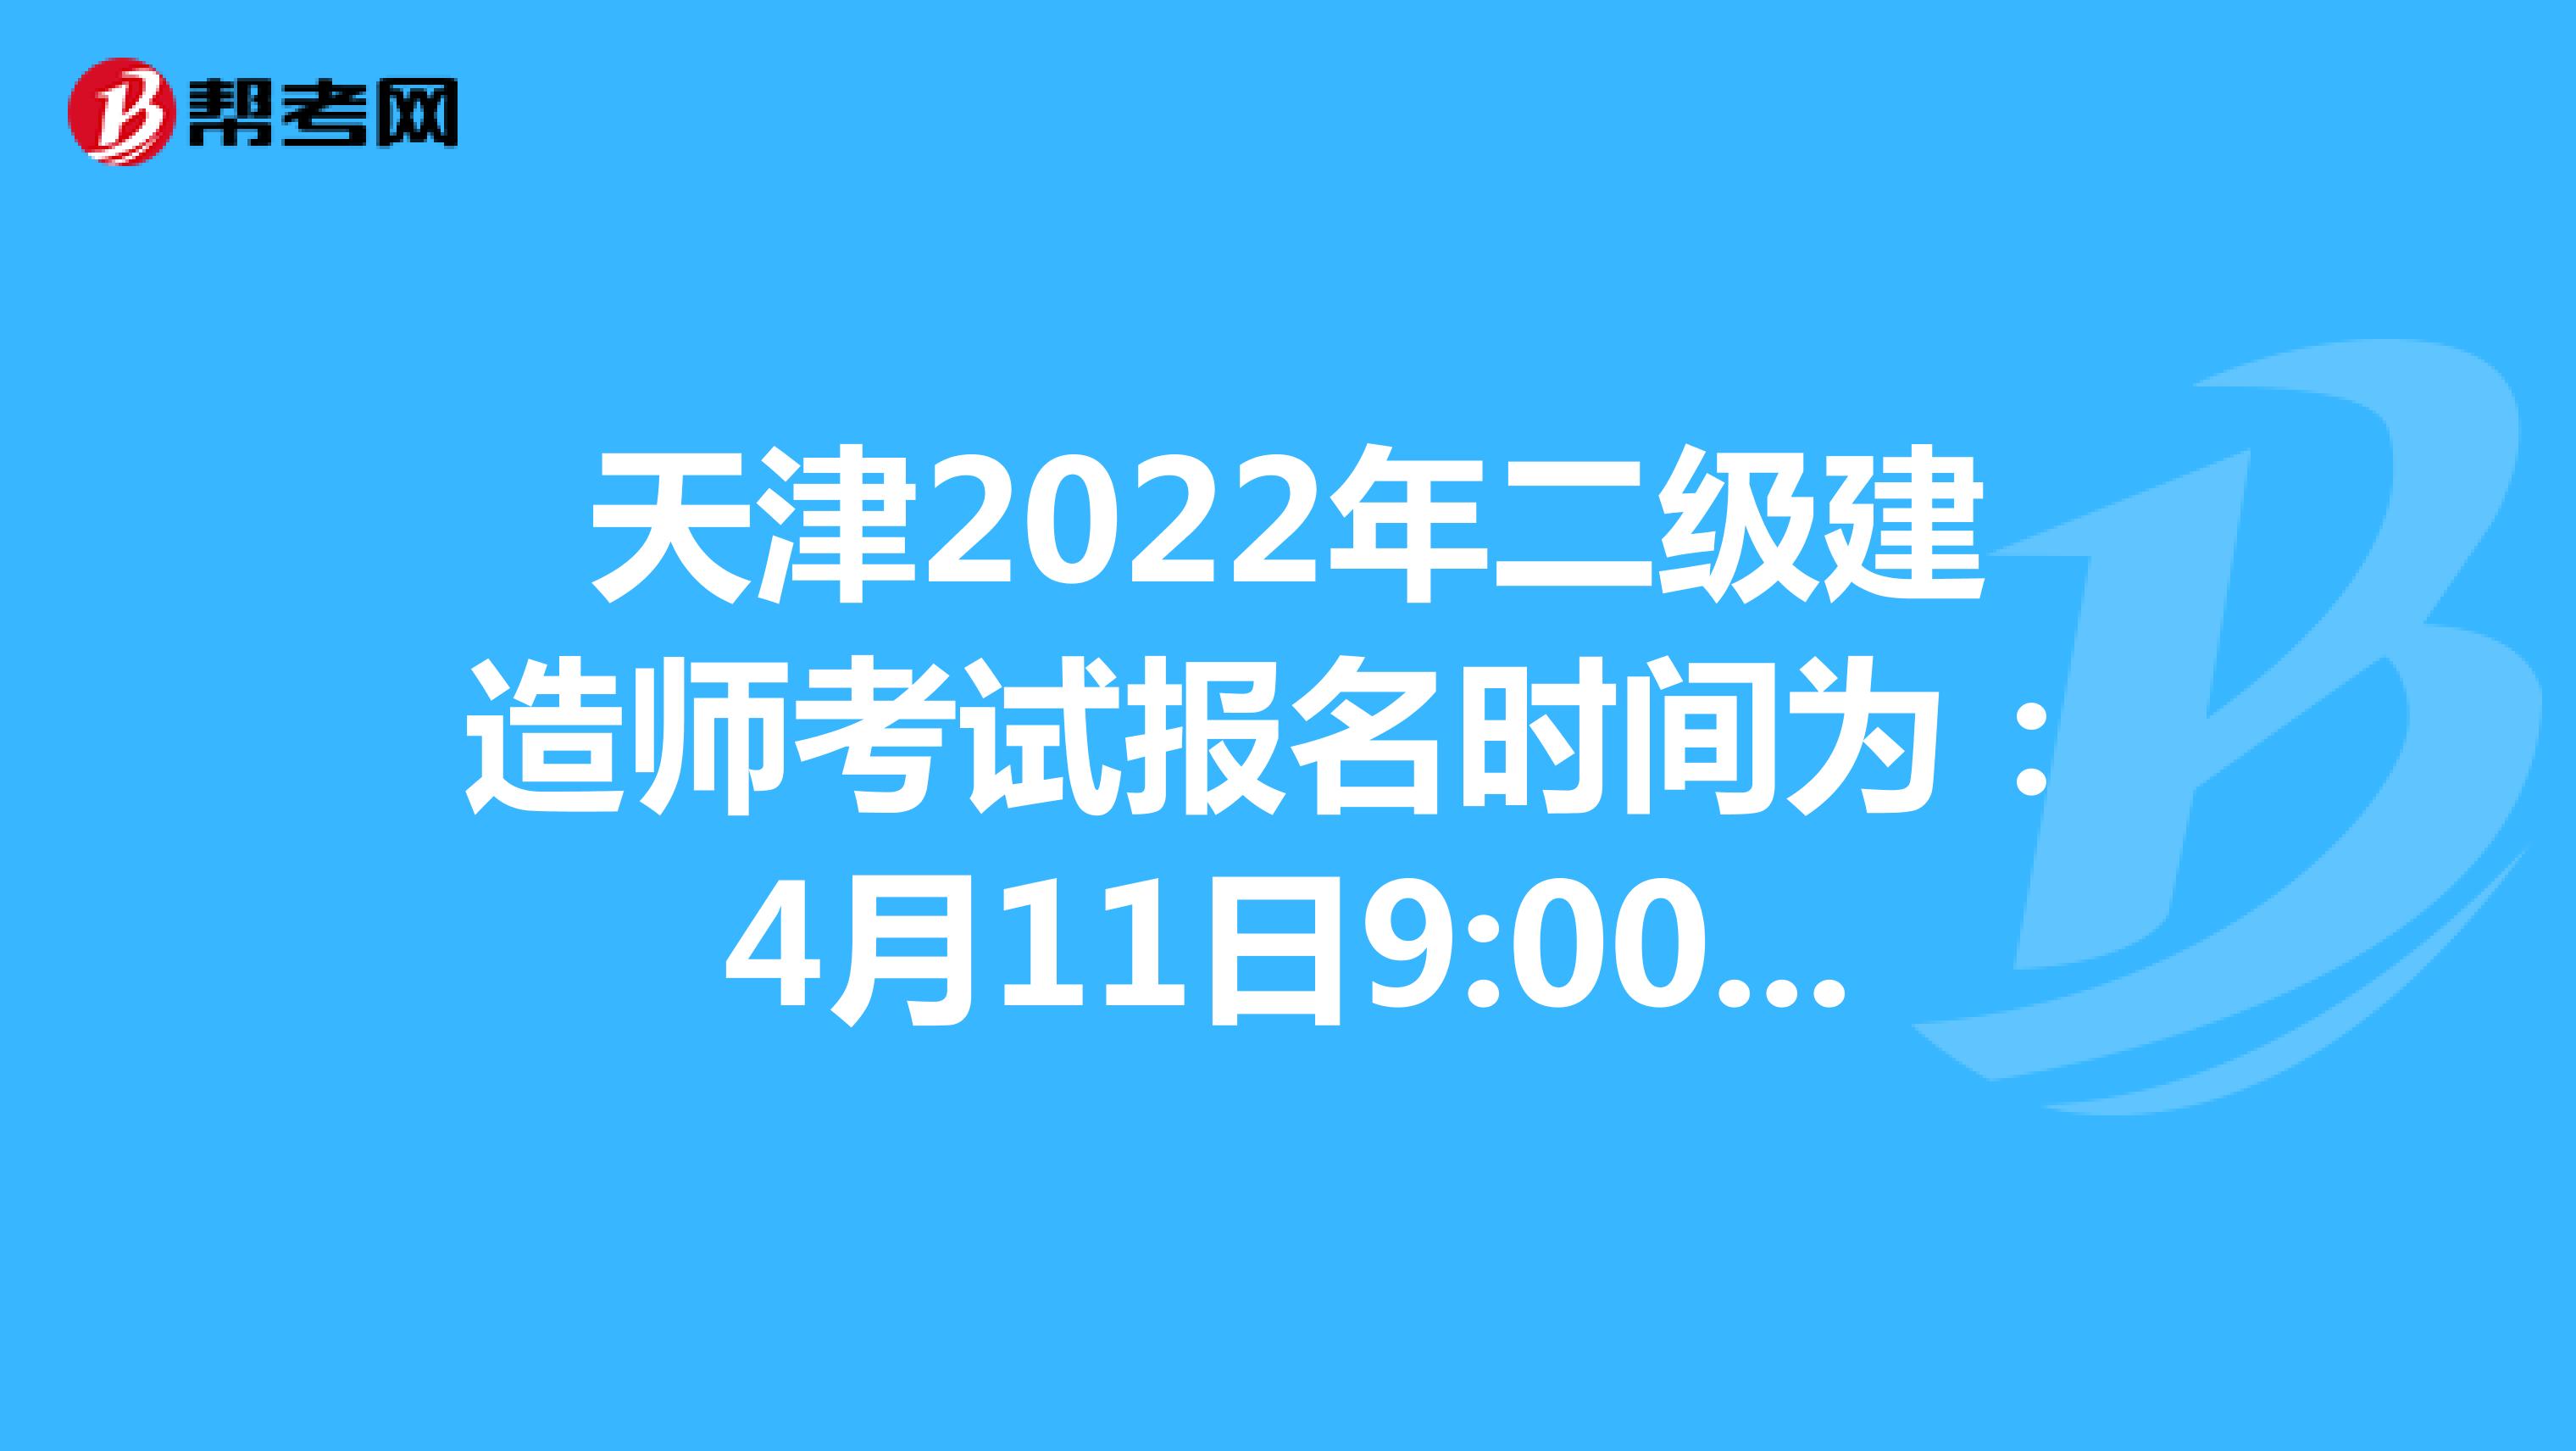 天津2022年二级建造师考试报名时间为：4月11日9:00-4月17日16:00